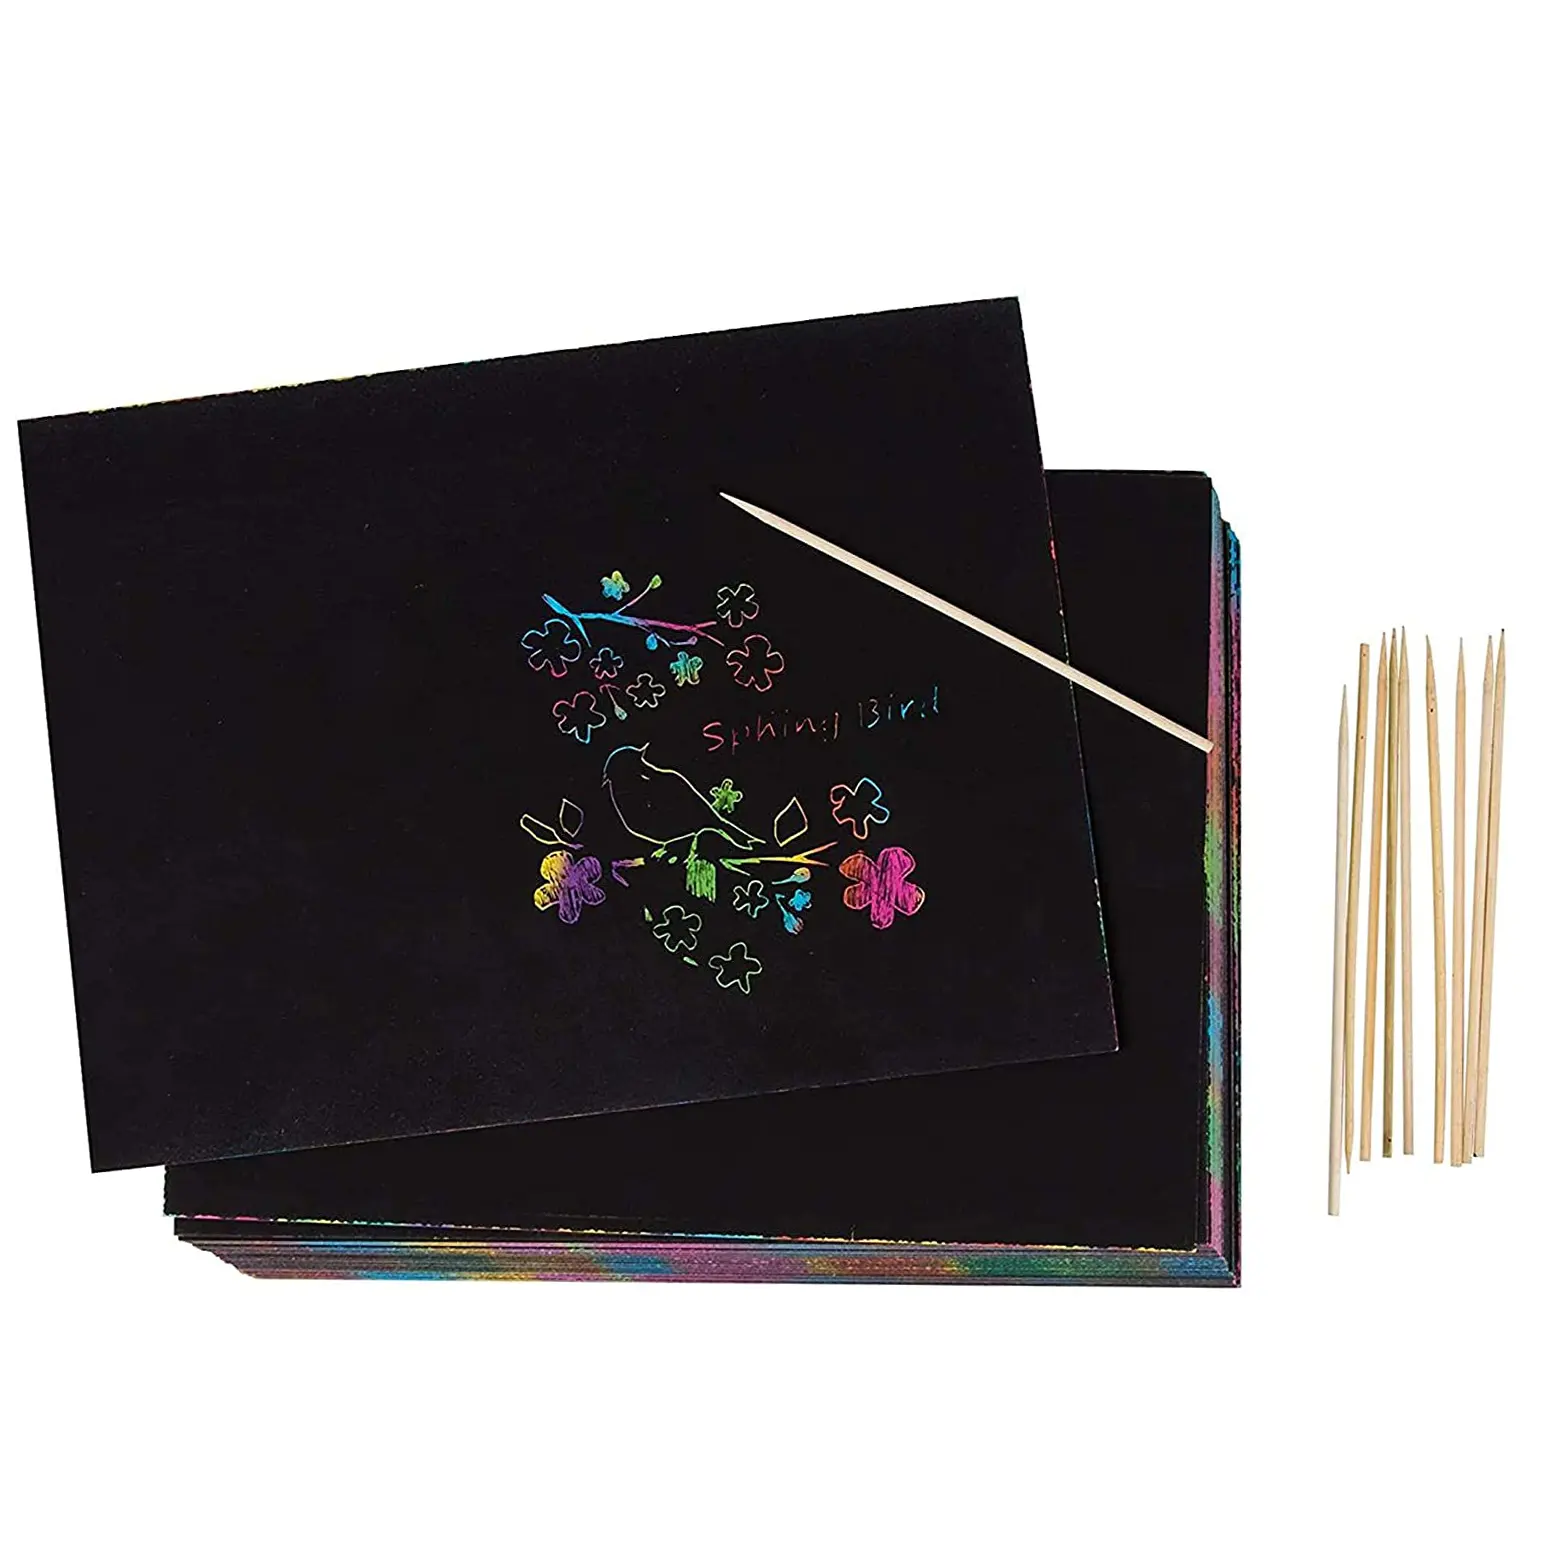 Kit de manualidades de papel para rascar mágico para niños, Bloc de notas de dibujo de Color, suministro para niños y niñas, fiesta DIY